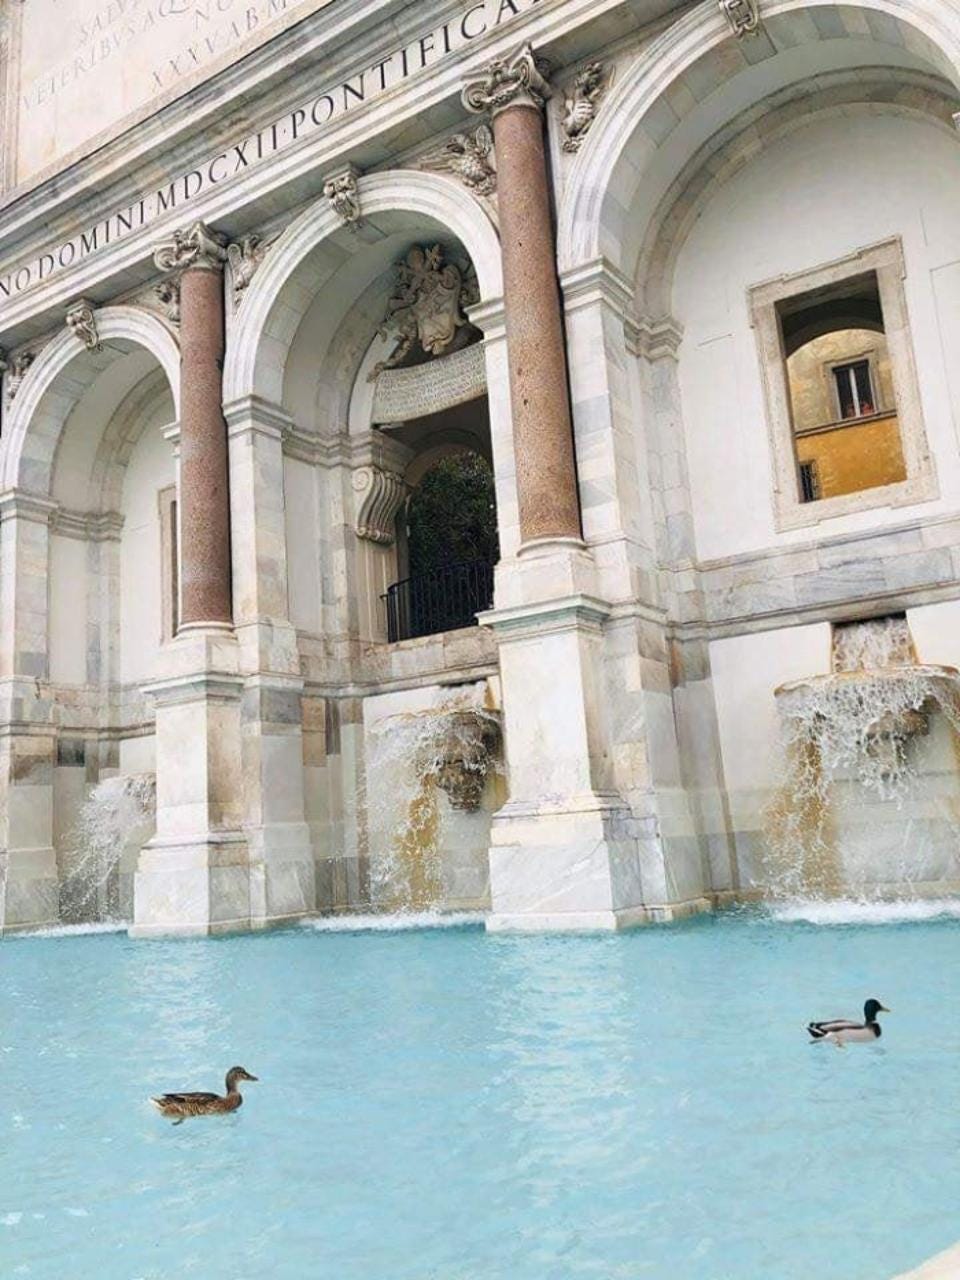 Ducks swimming in the Trevi Fountain.